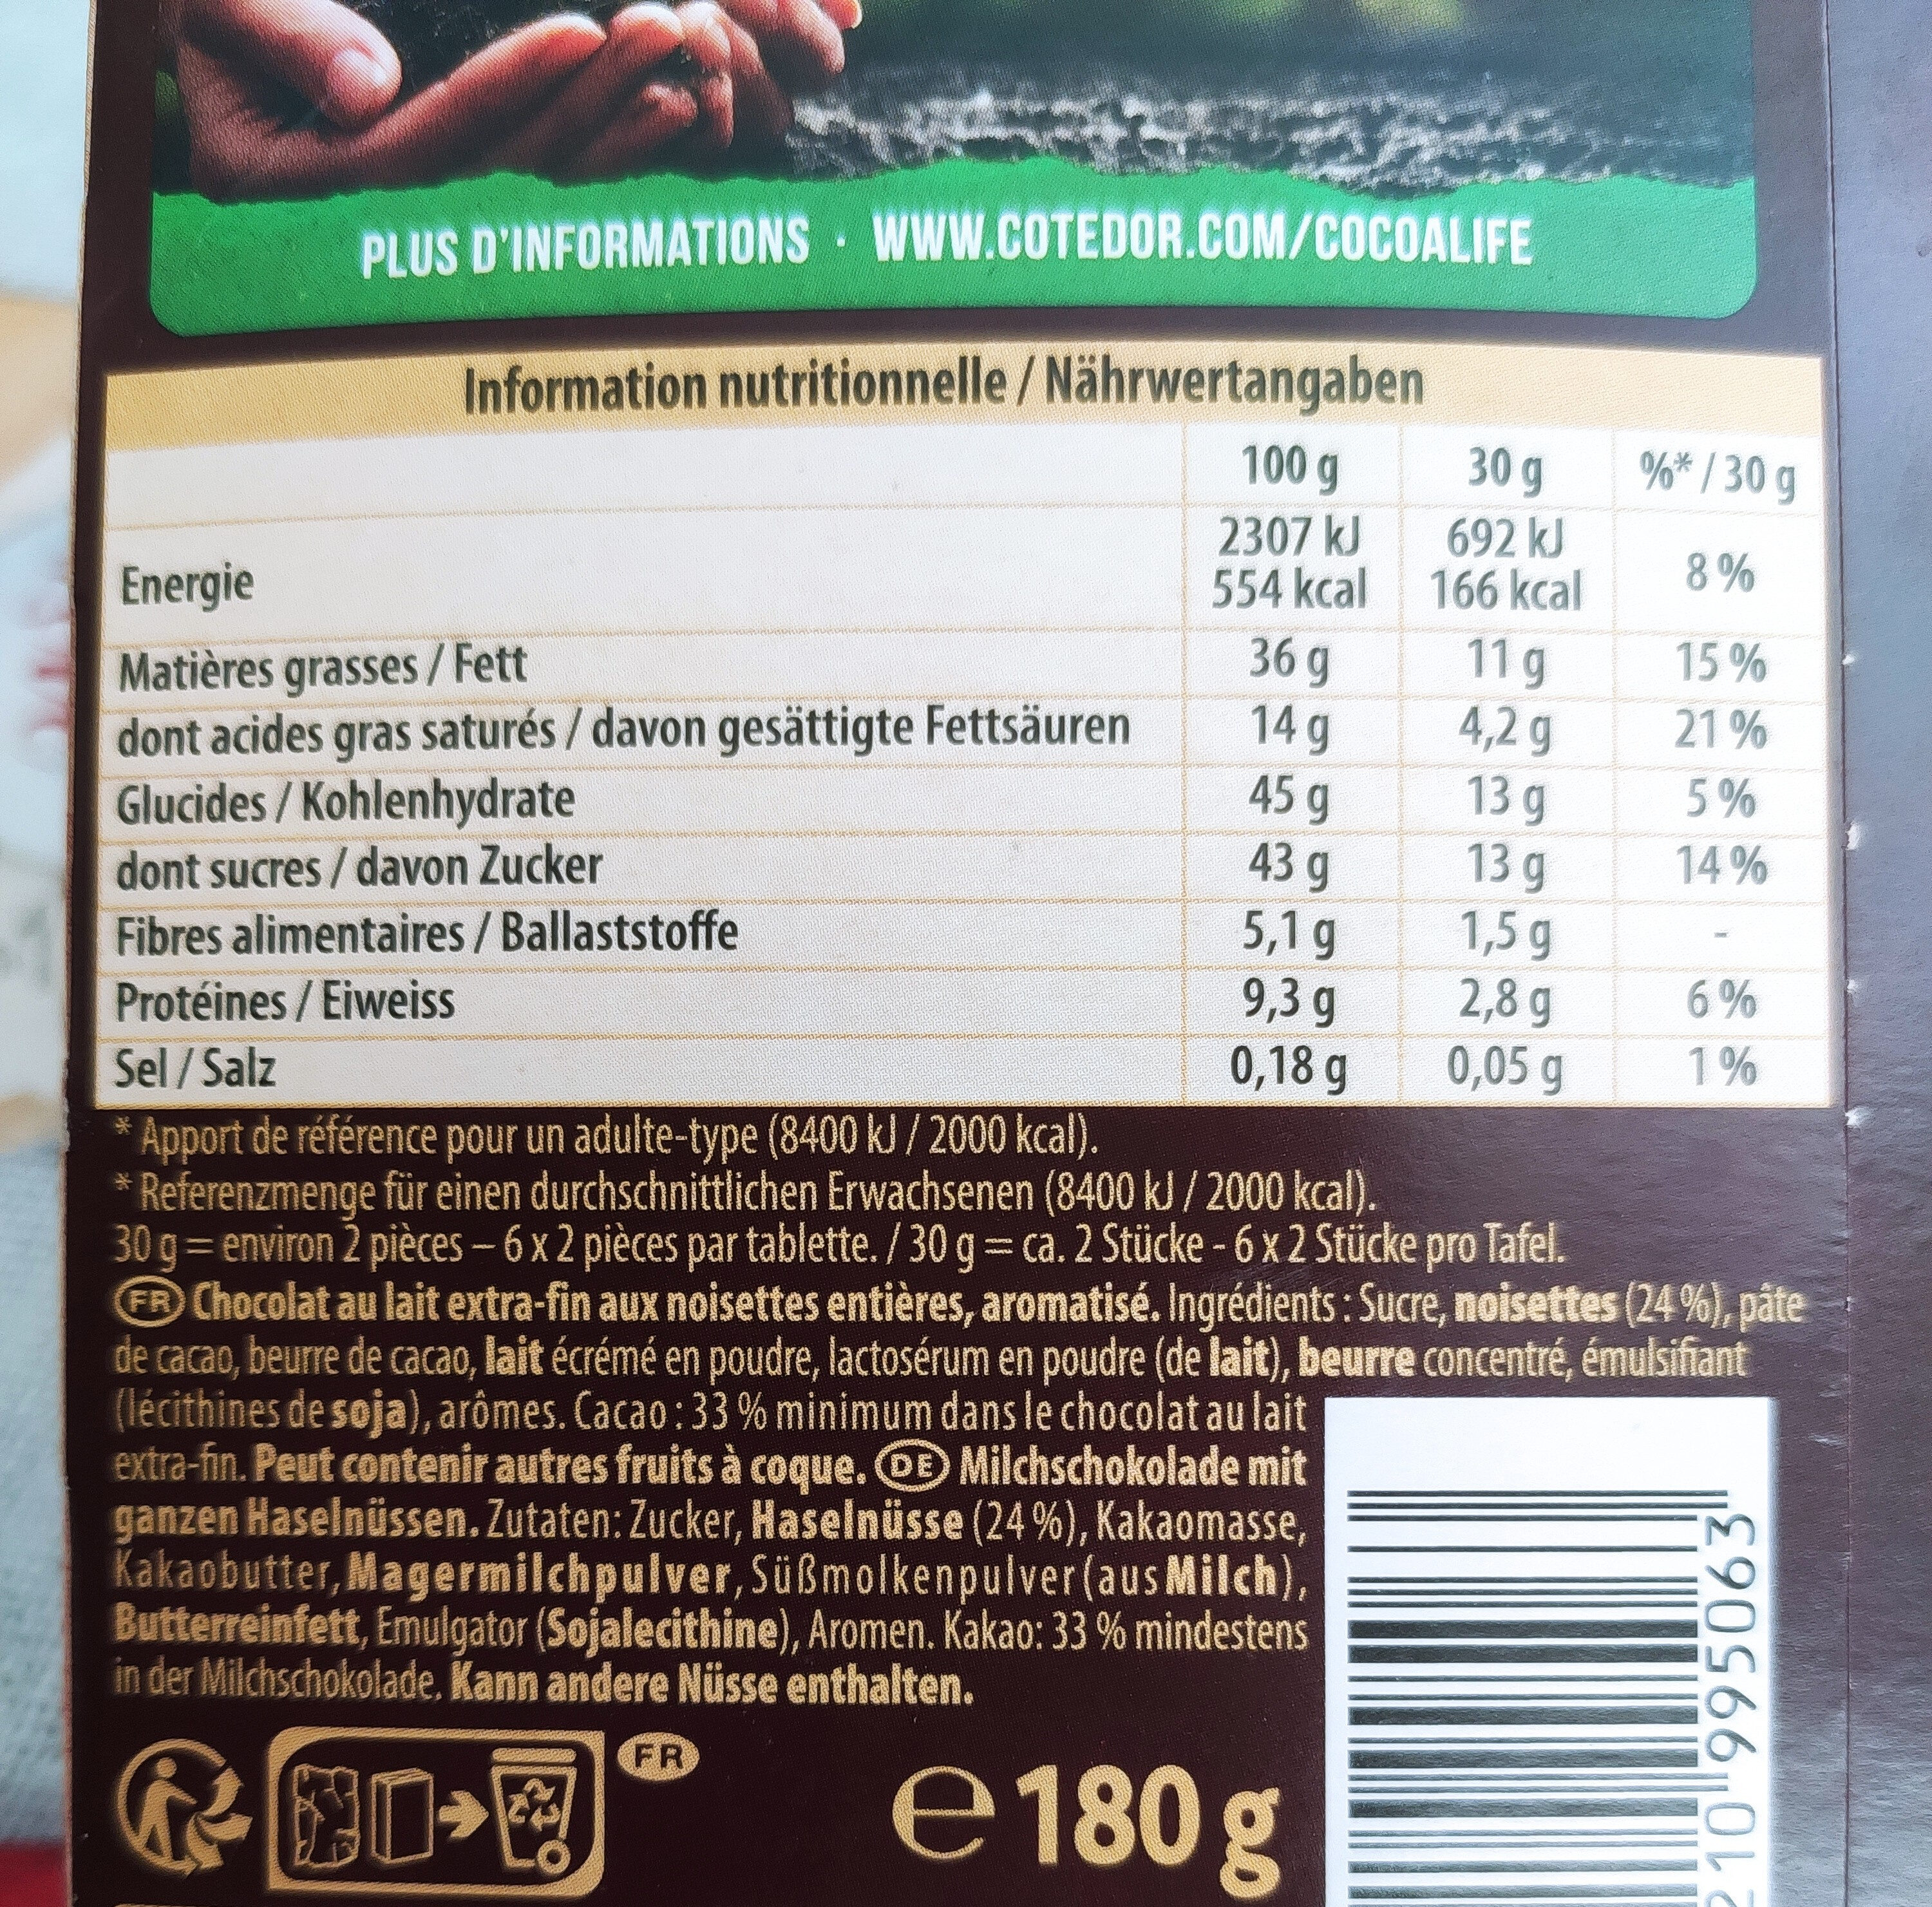 Lait noisettes entières - Nutrition facts - fr